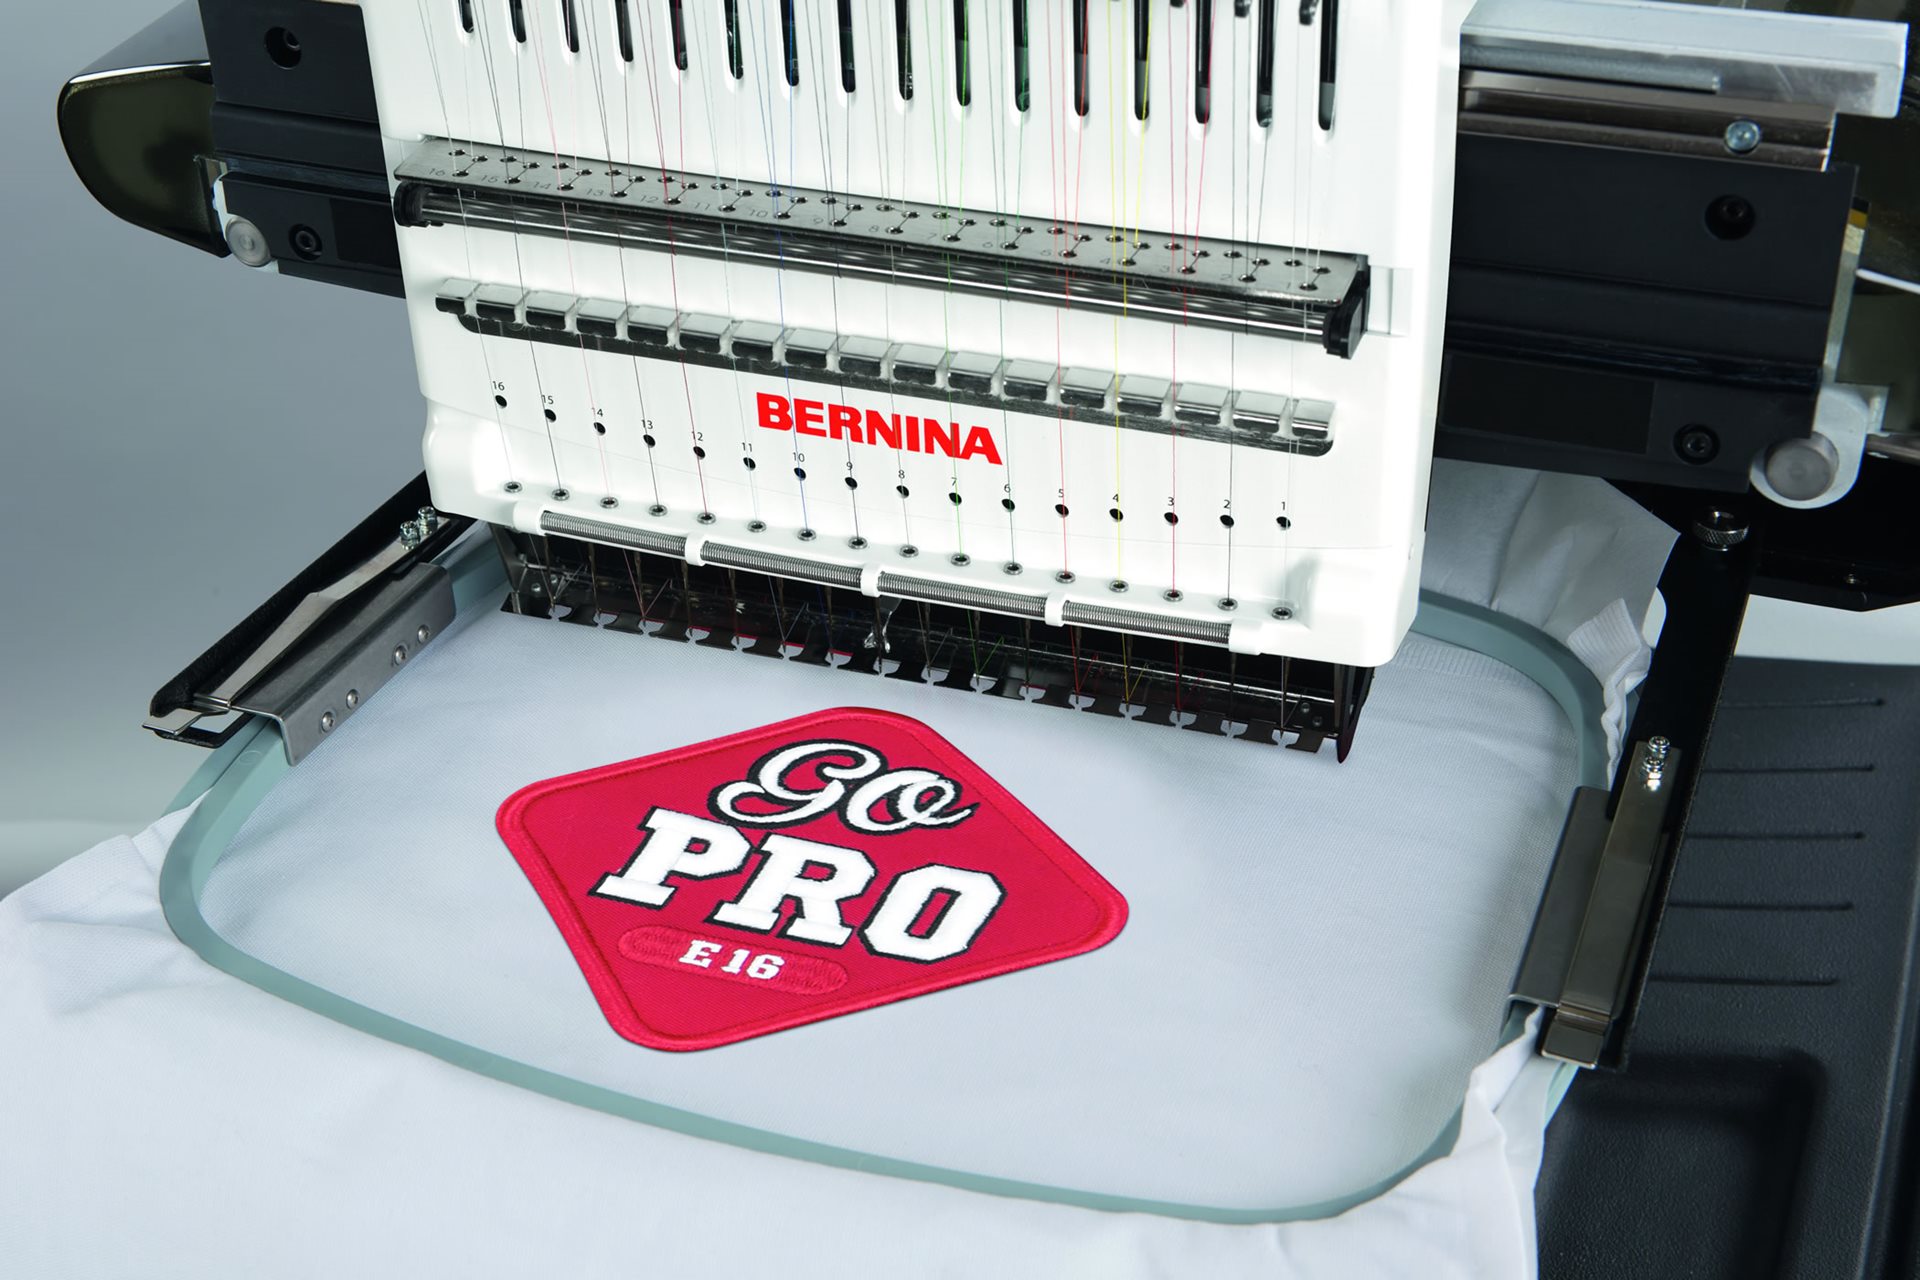 Bernina Embroidery Machine : Bernina Sewing and Embroidery Machine ...